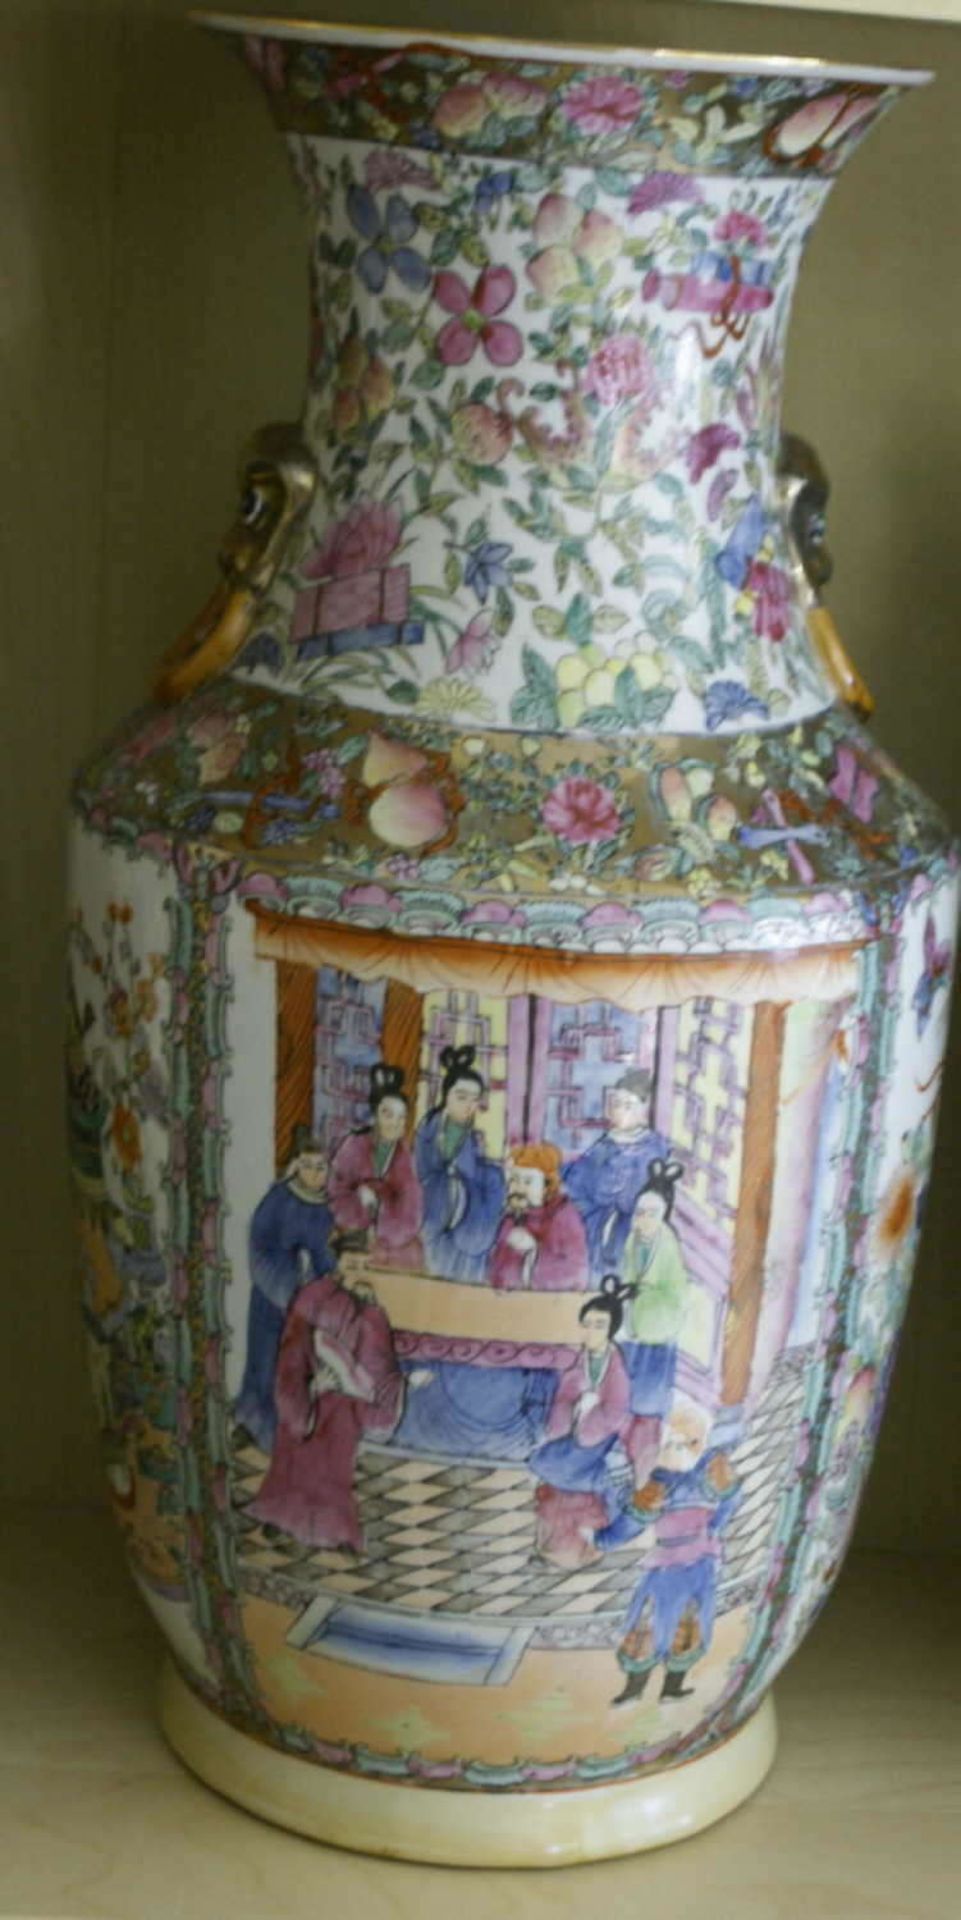 Große Keramikvase, reichlich bemalt mit chinesichen Szenen, sowie Blumen. Am Boden